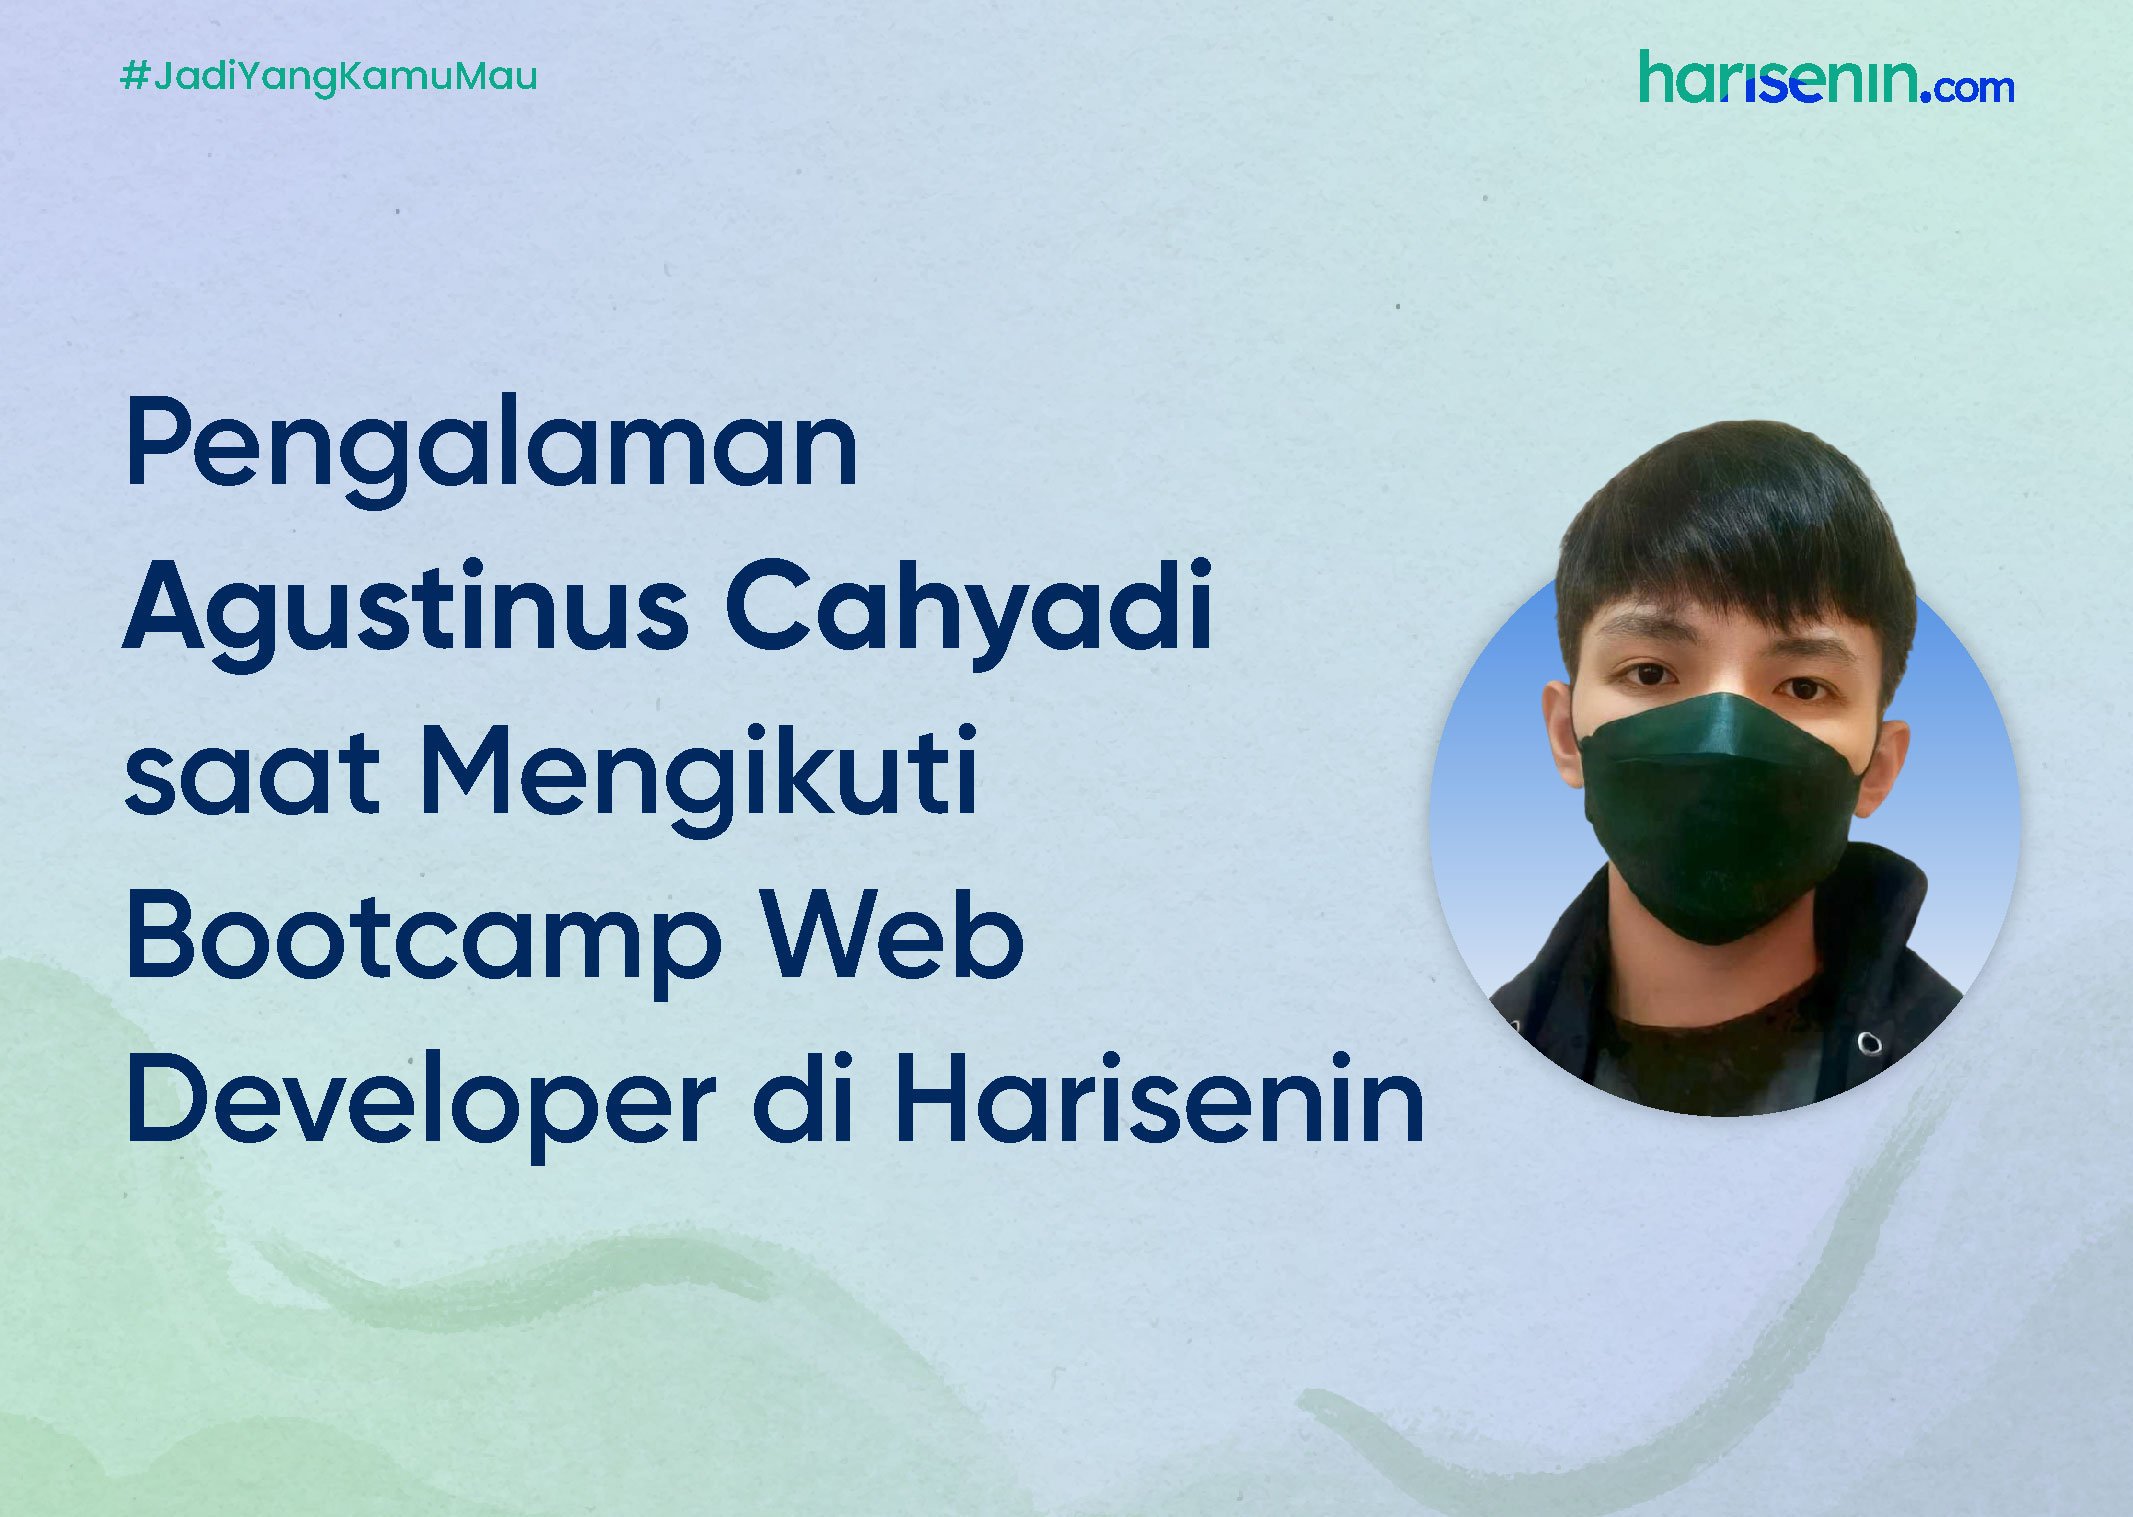 Pengalaman Agustinus Cahyadi saat Mengikuti Bootcamp Web Developer di Harisenin